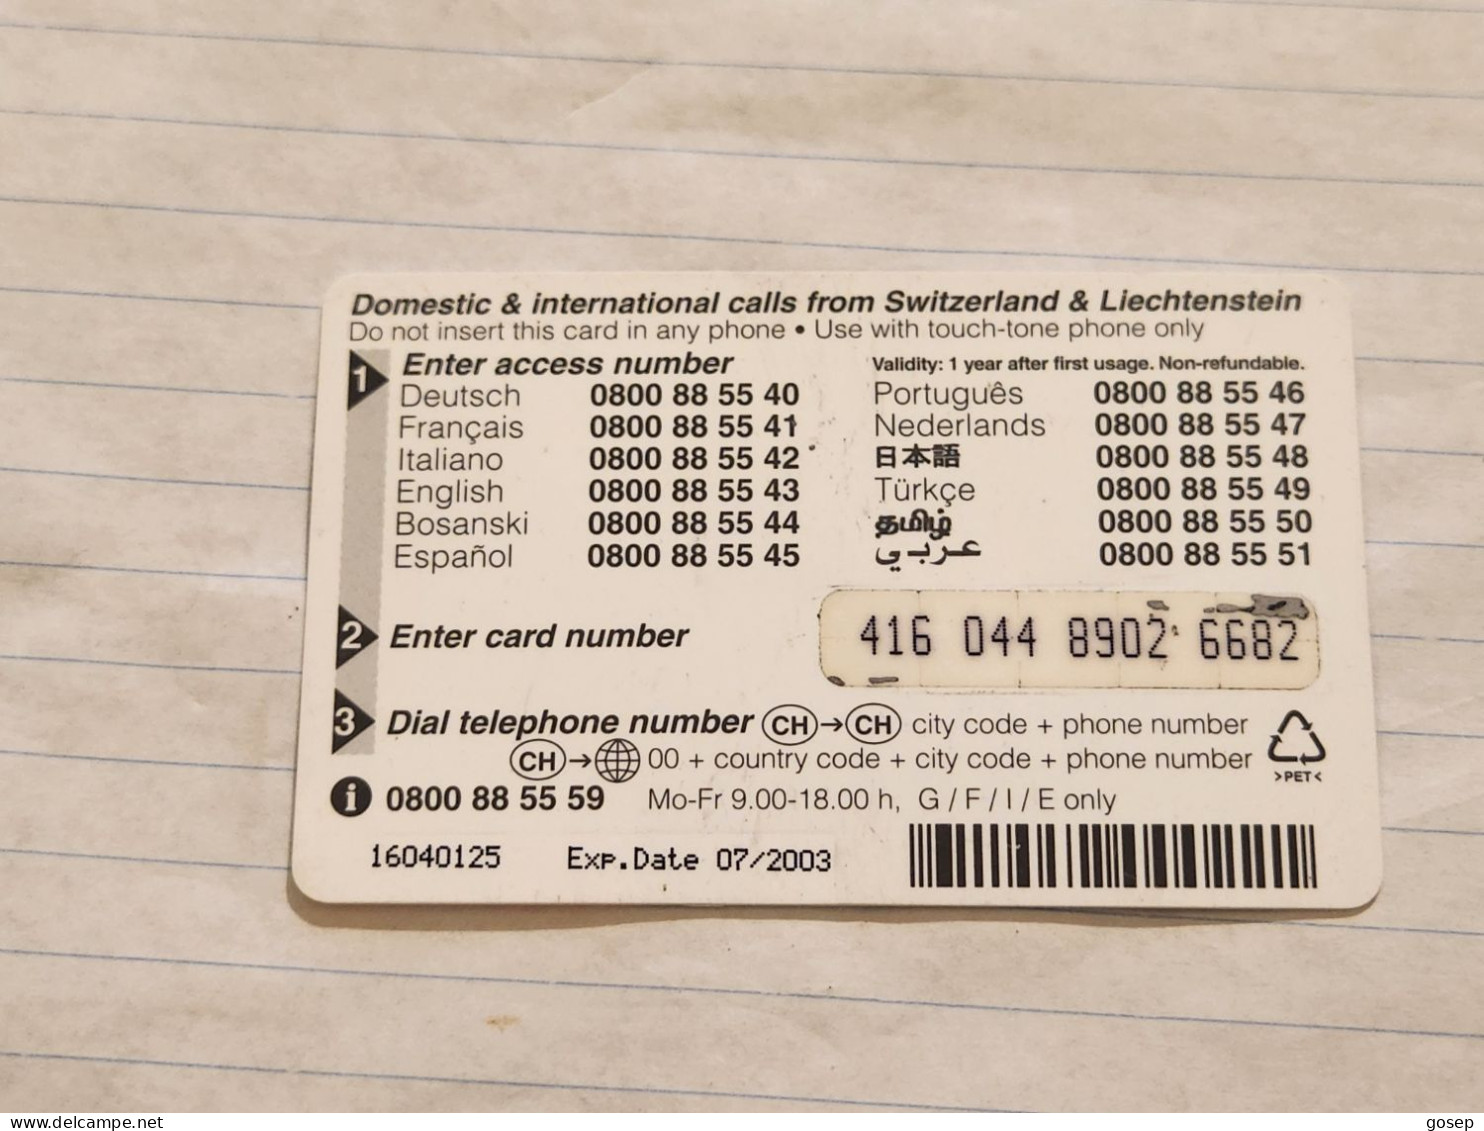 LIECHTENSTEIN-(LI-18B)-SHARK-(53)(416-044-8902-6682)(20CHF)-(7/03)(16040125)-tirage-300.000-used Card - Liechtenstein